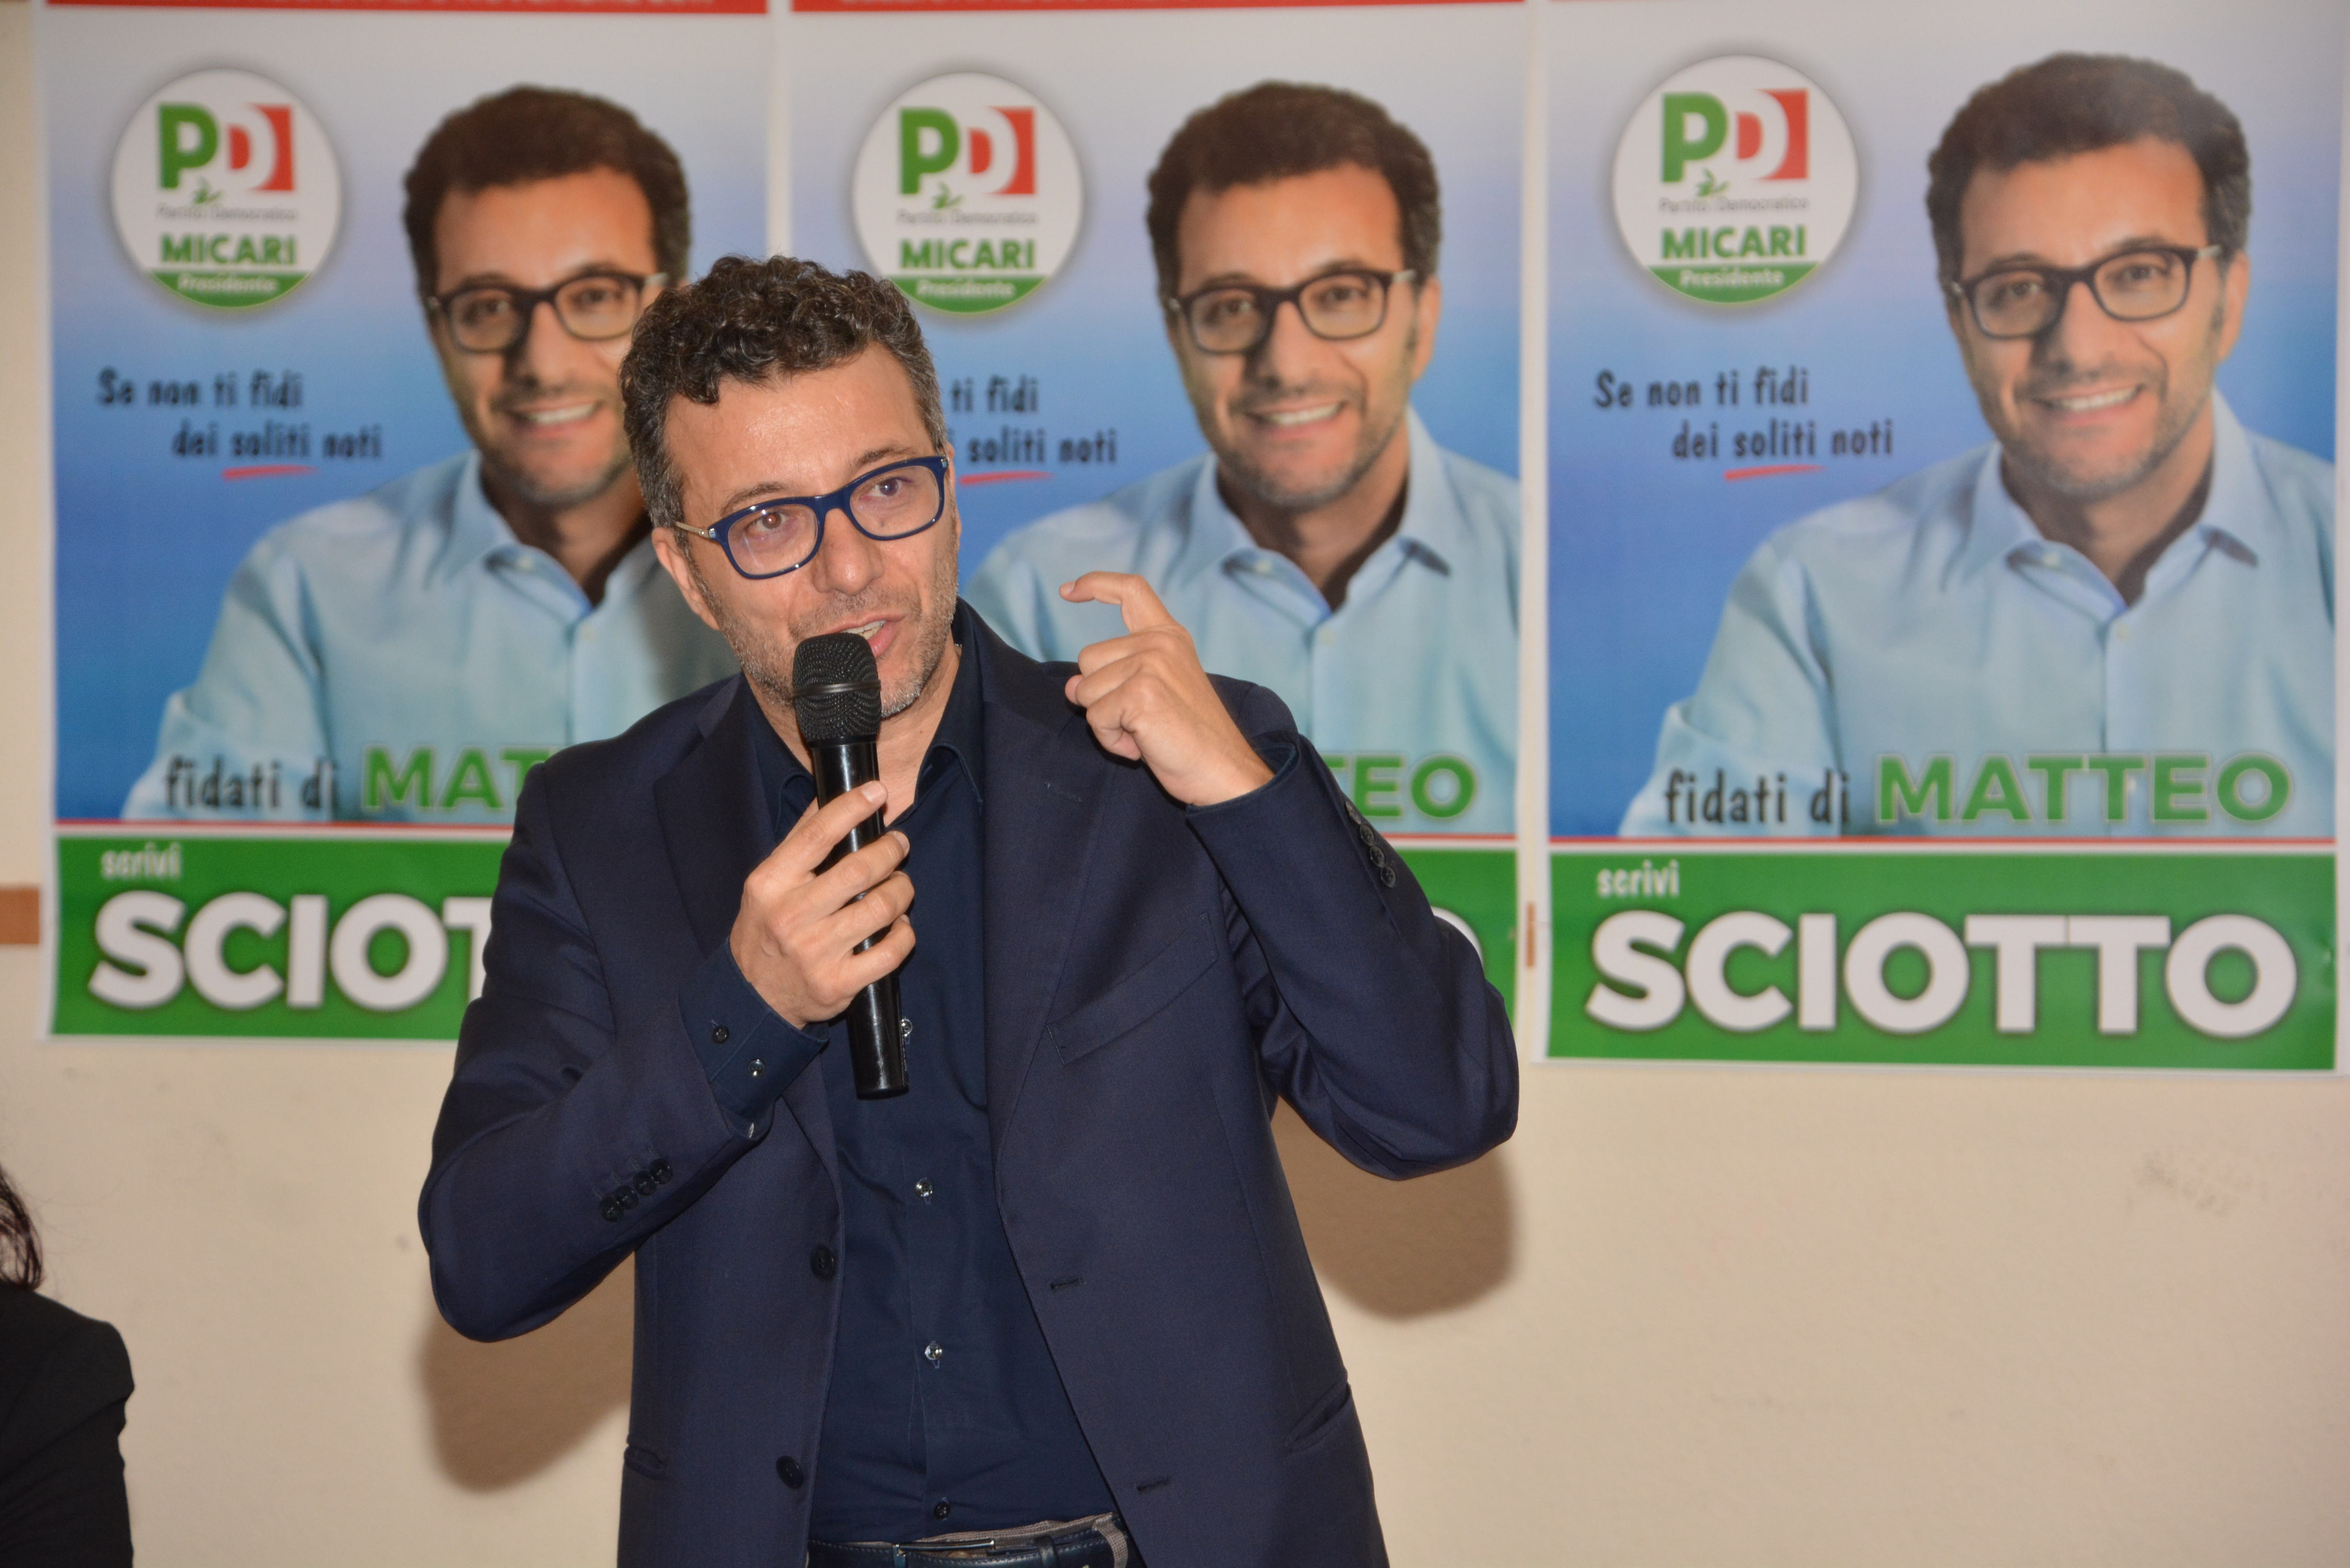 Post-Elezioni. Matteo Sciotto (PD): “Risultato personale ottenuto importante, pronto a dare il mio contributo per rilancio iniziativa politica”